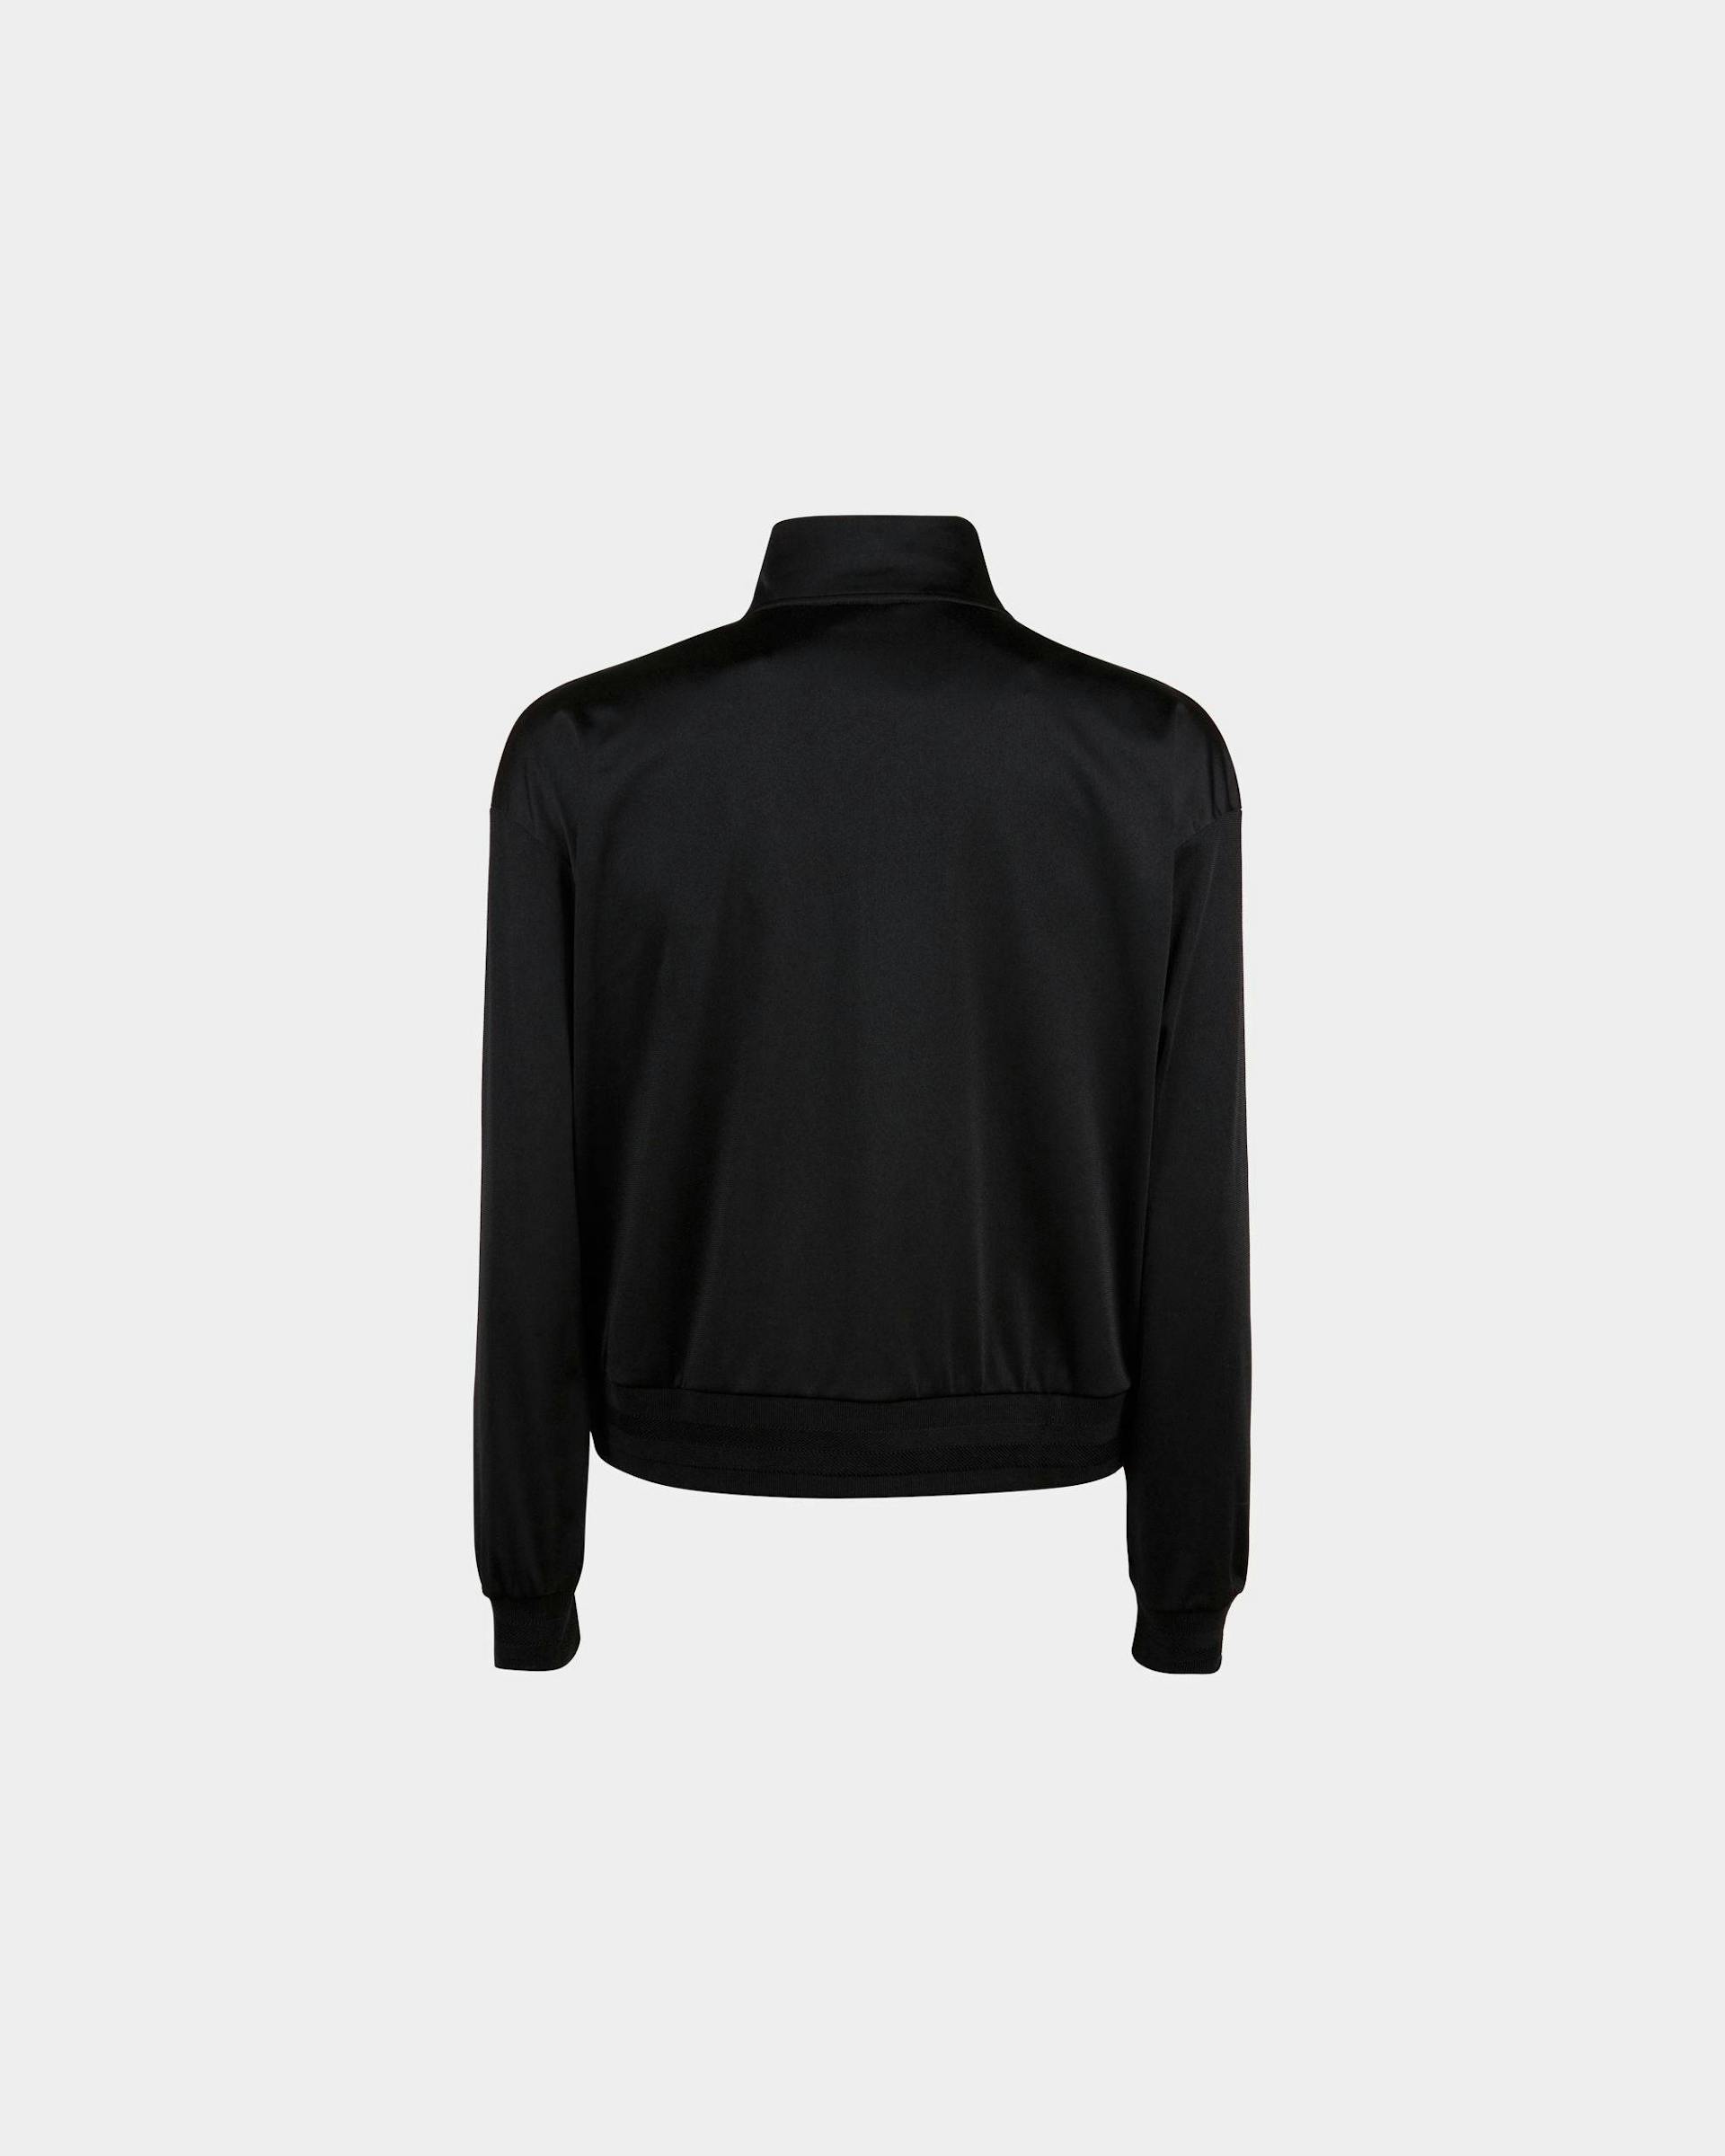 Men's Sweatshirt In Black | Bally | Still Life Back